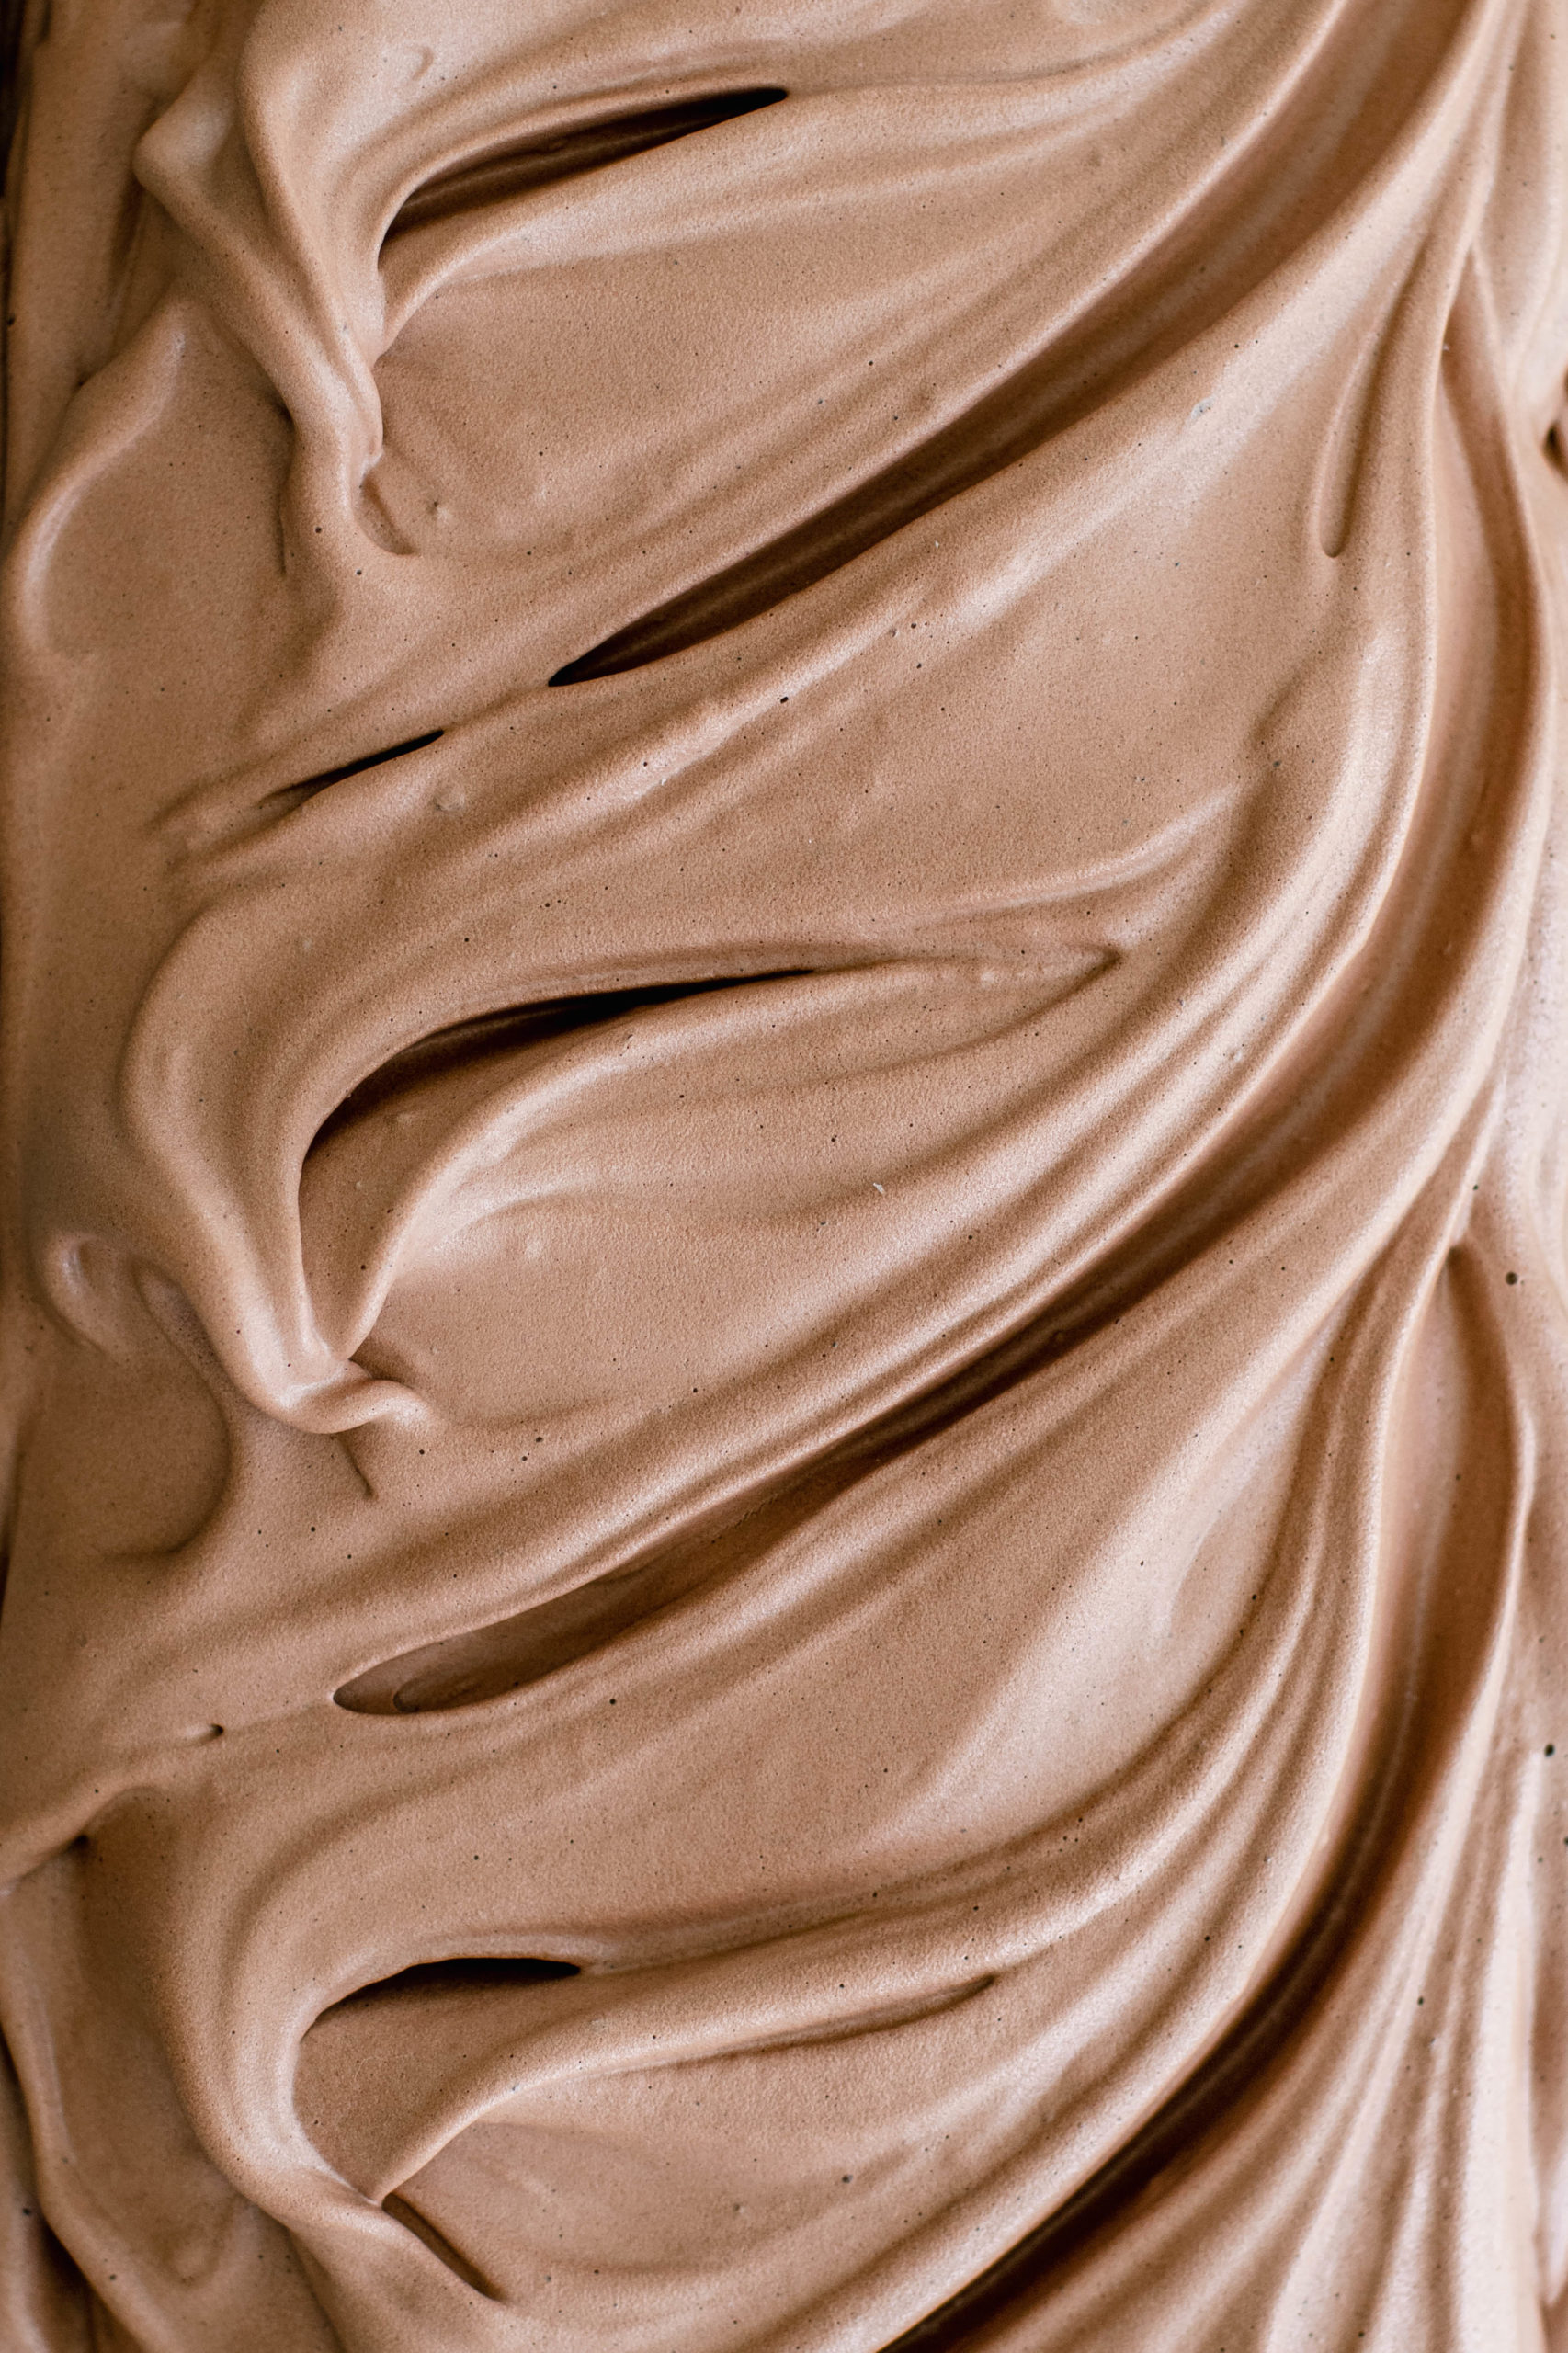 Chocolate Ice Cream at Dom's Creamery in Avon, CT. 16 W Main St, Avon, CT.